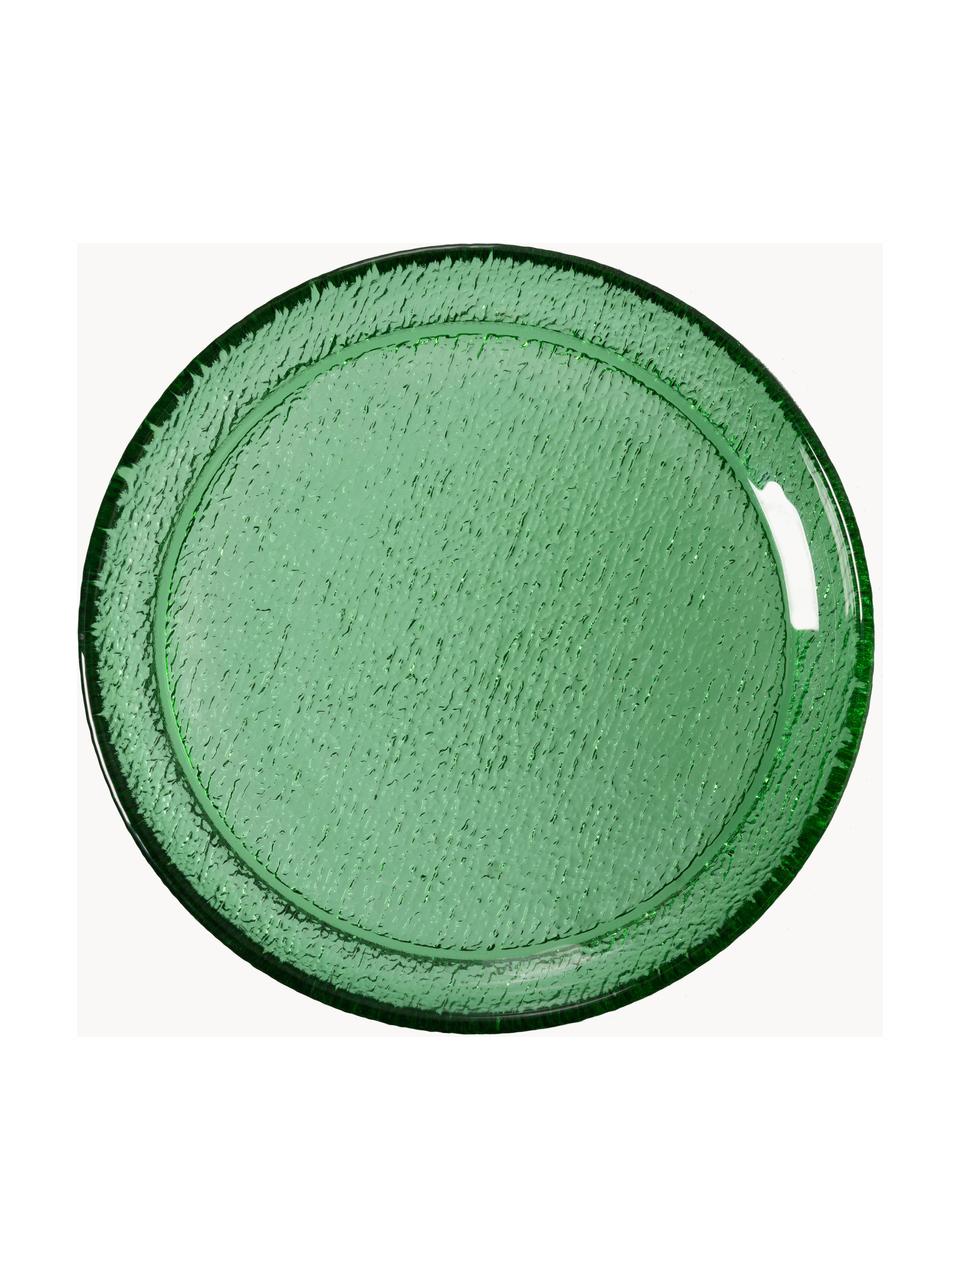 Piattini da colazione in vetro The Emeralds 2 pz, Vetro, Verde trasparente, Ø 21 cm